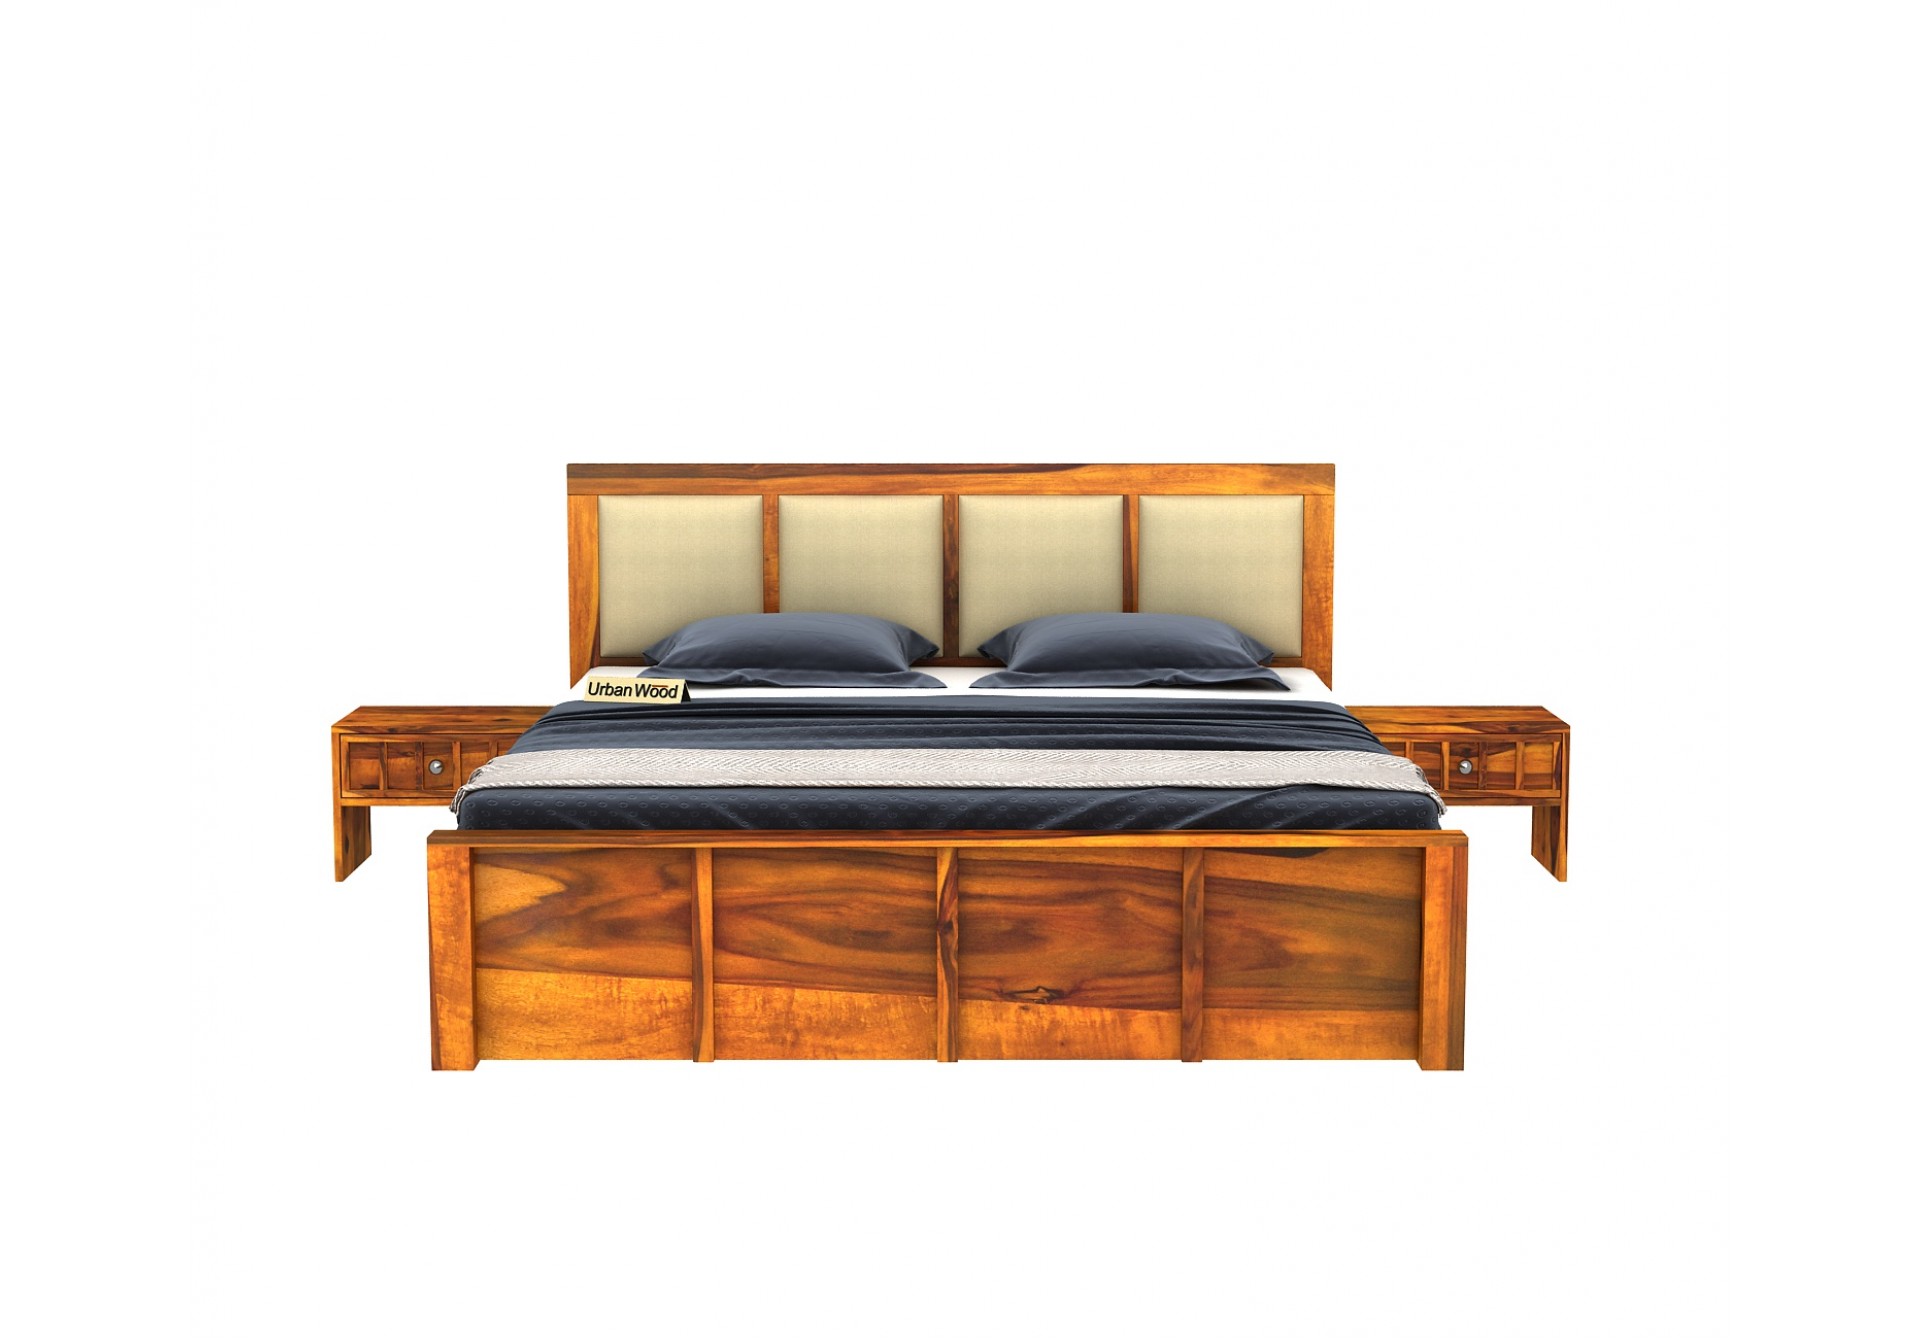 Harris Bed Without Storage ( King Size, Honey Finish )